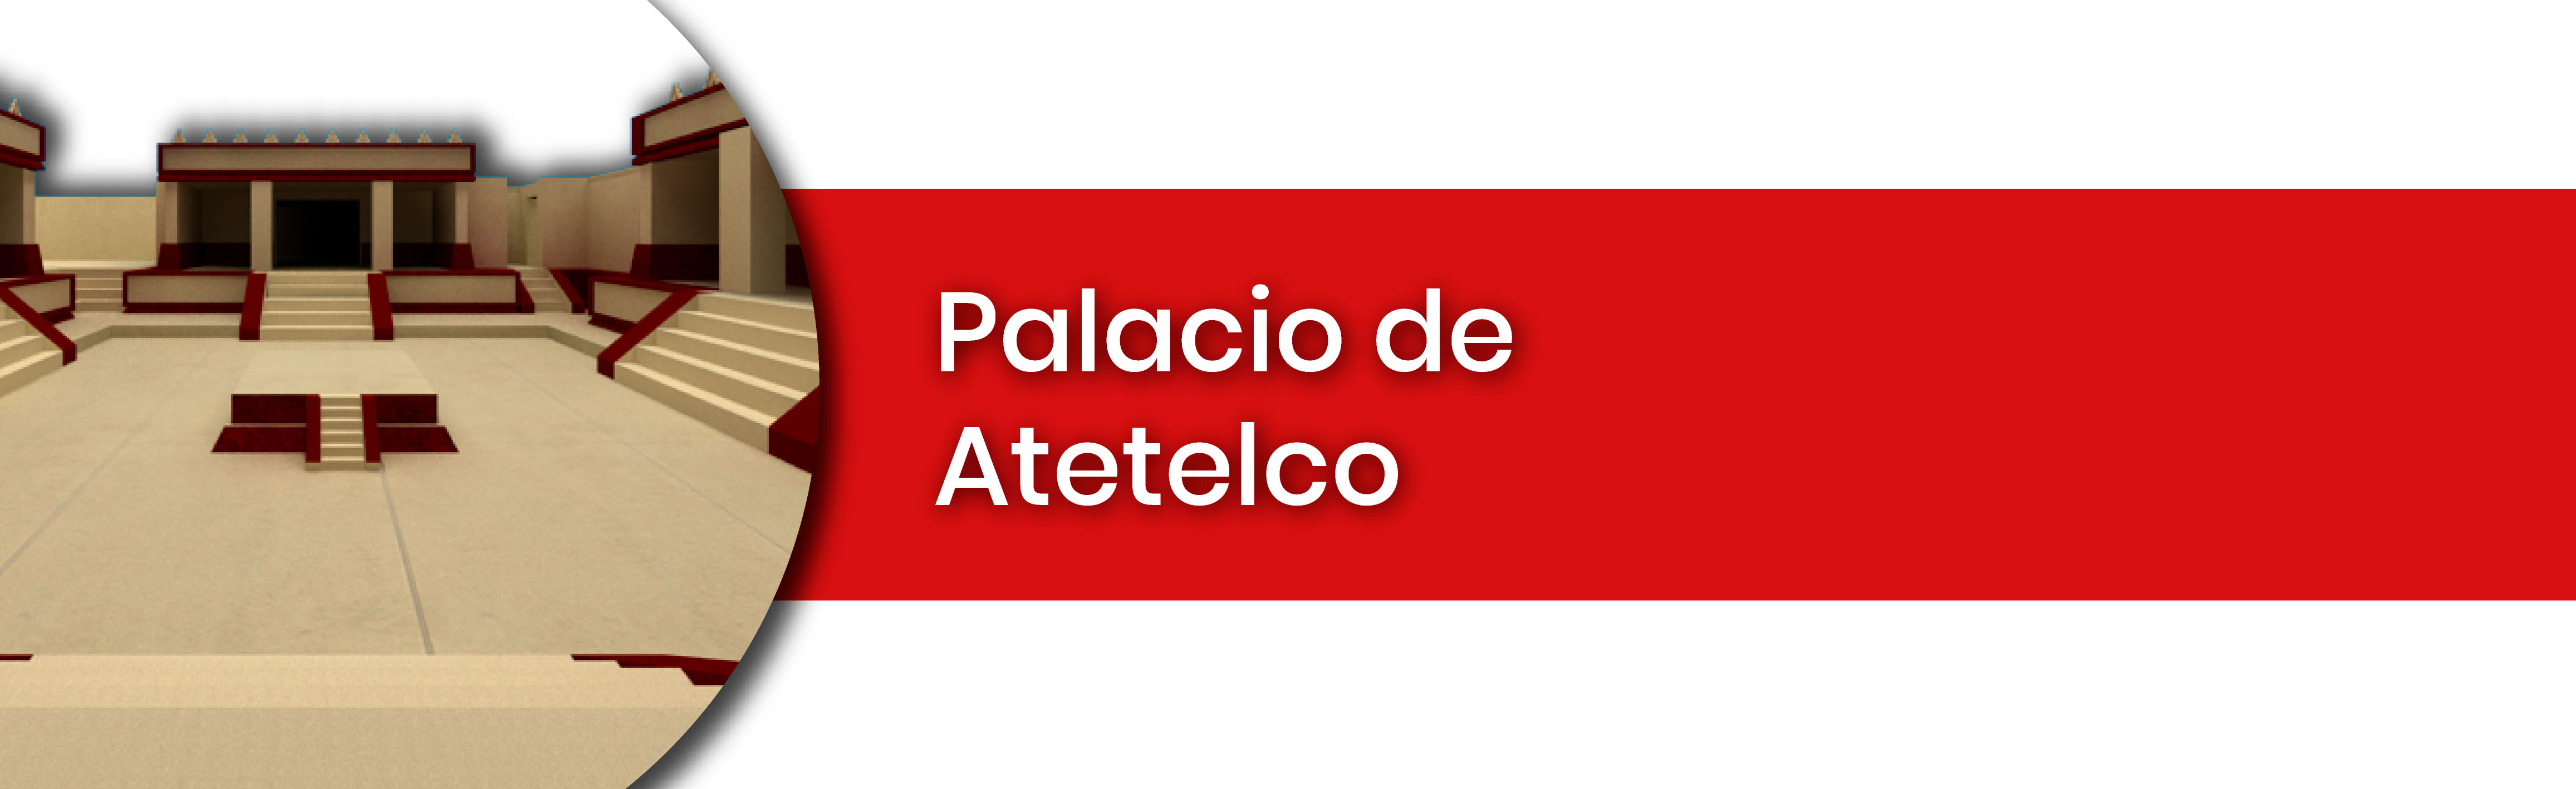 Palacio de Atetelco